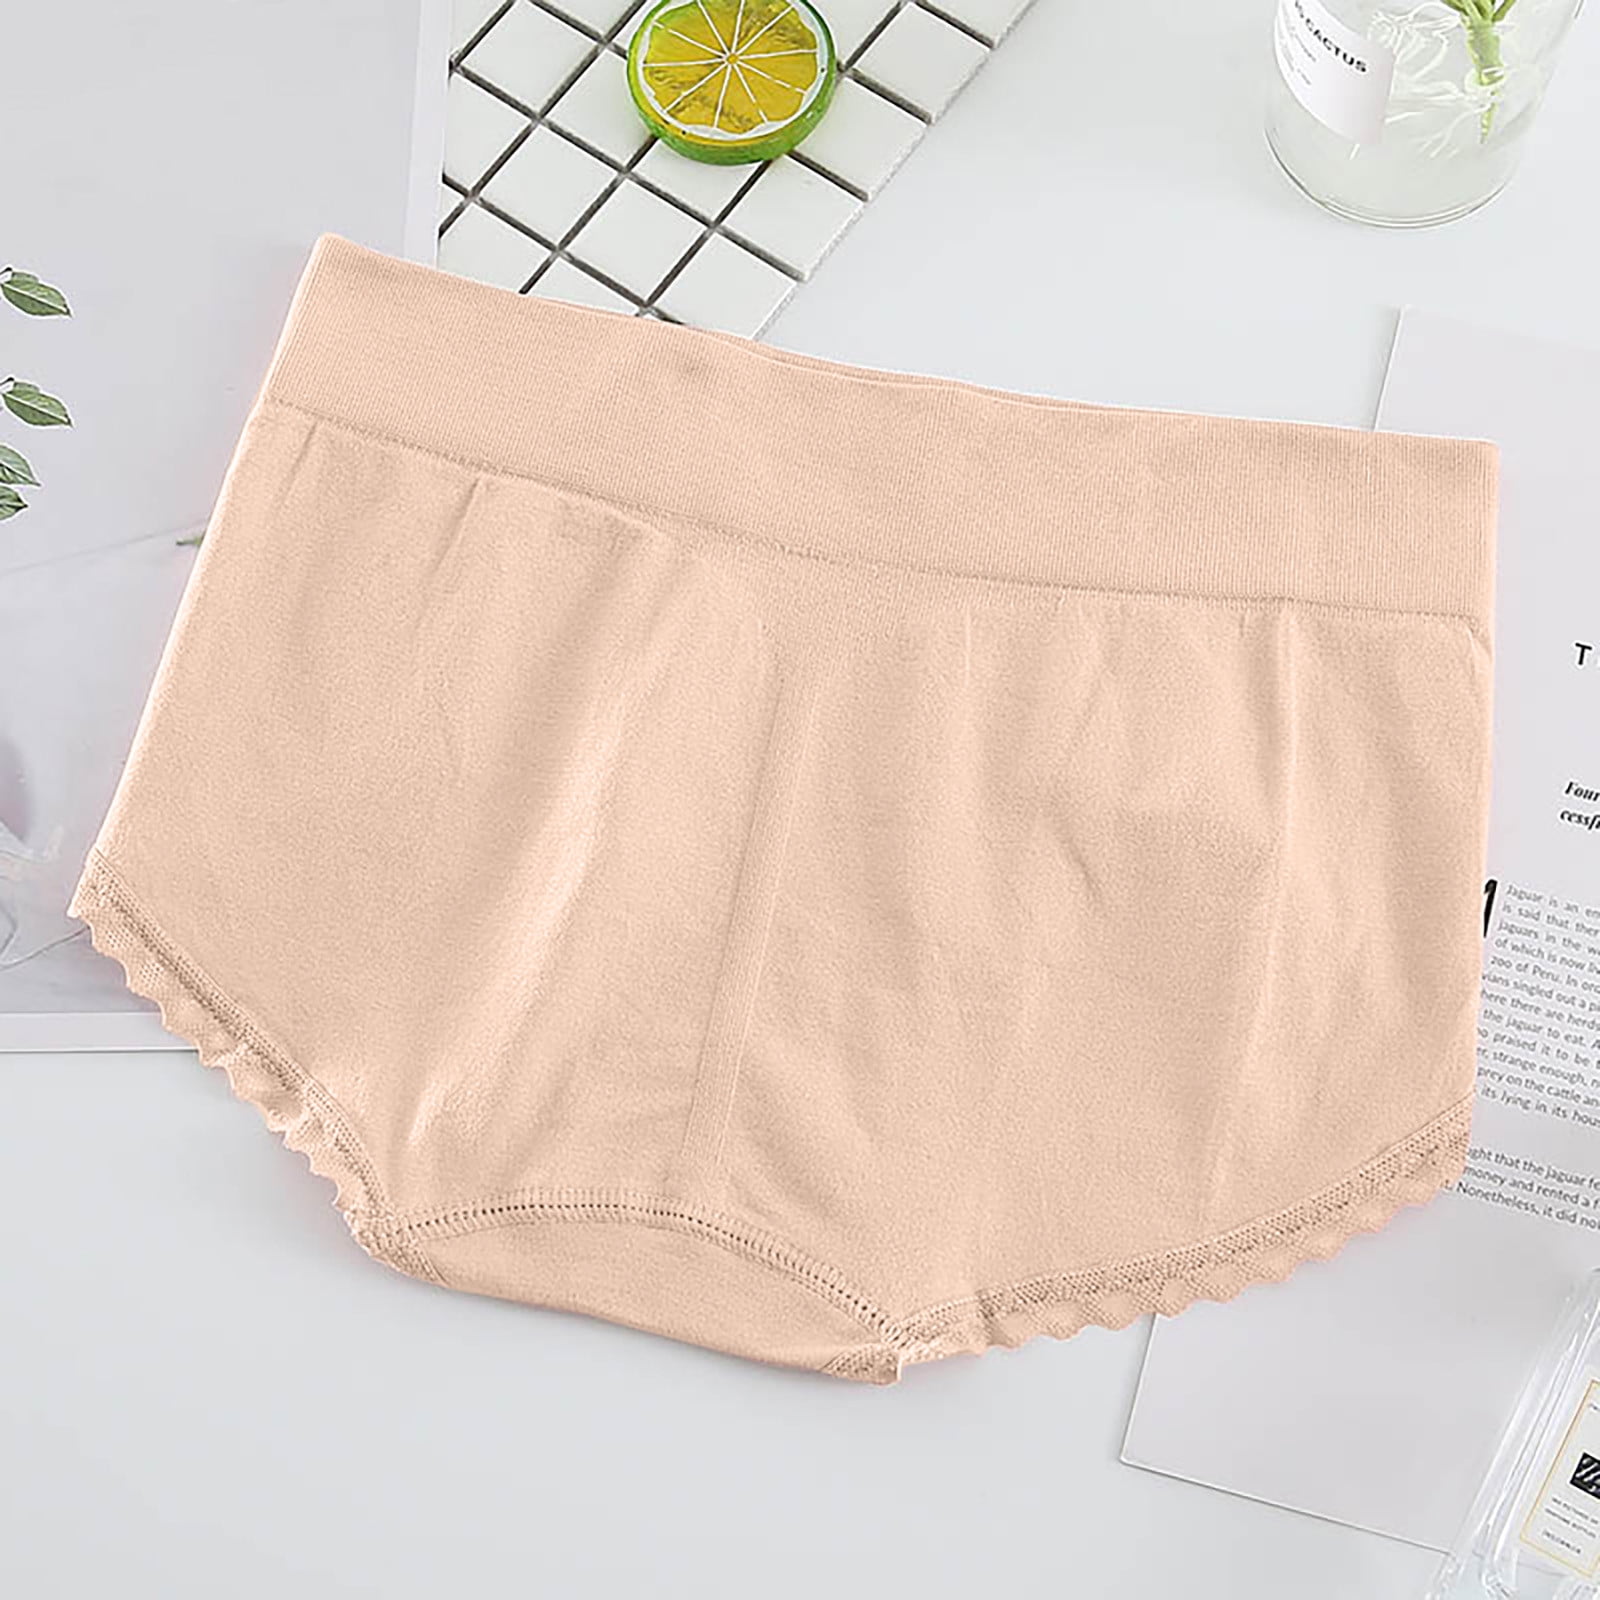  Altheanray Womens Underwear Cotton Briefs - High